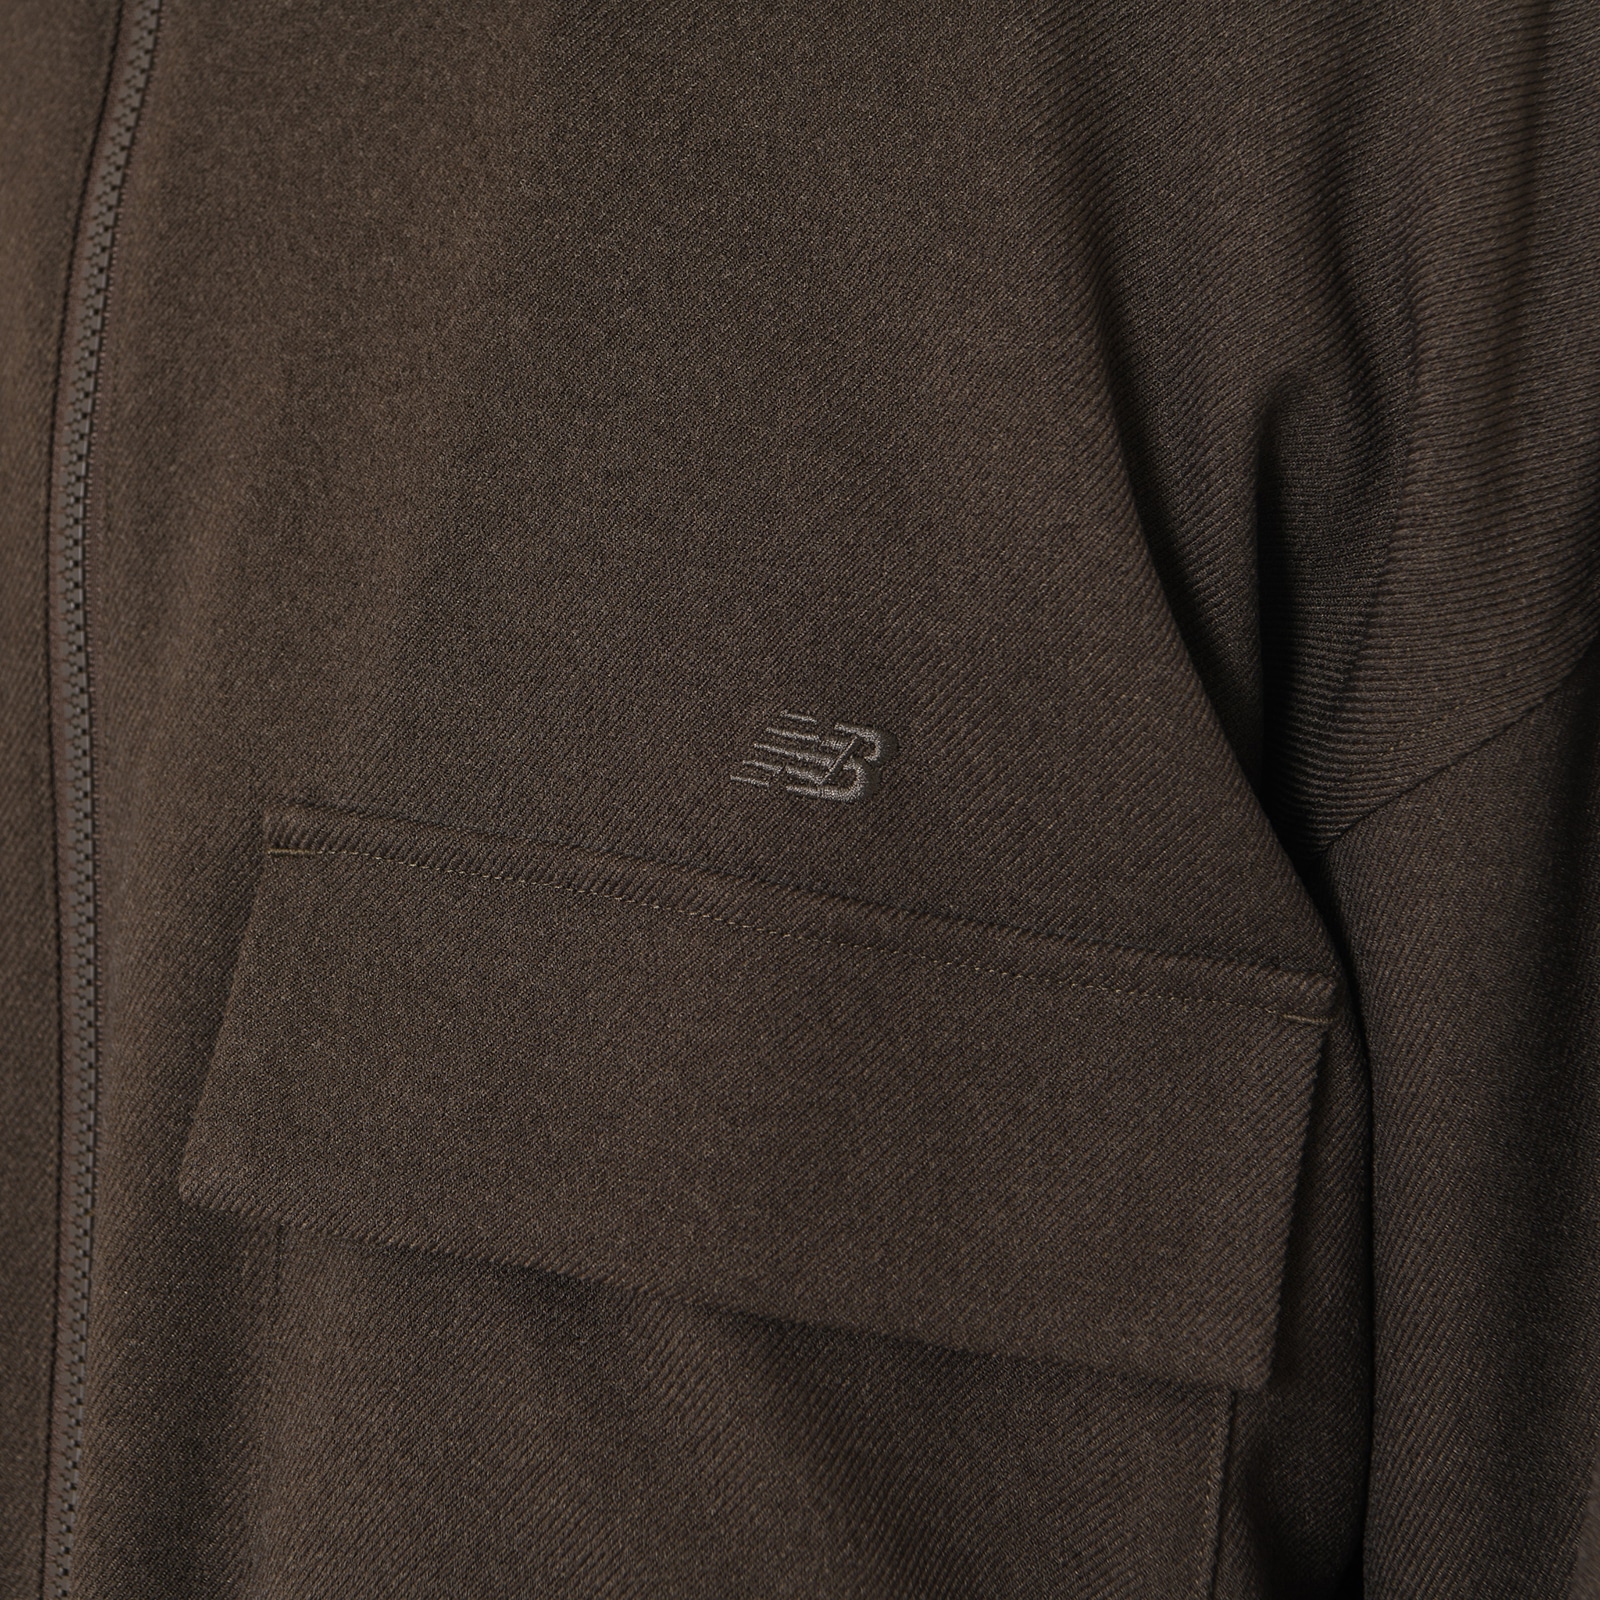 MFO Wool-Like Military Jacket